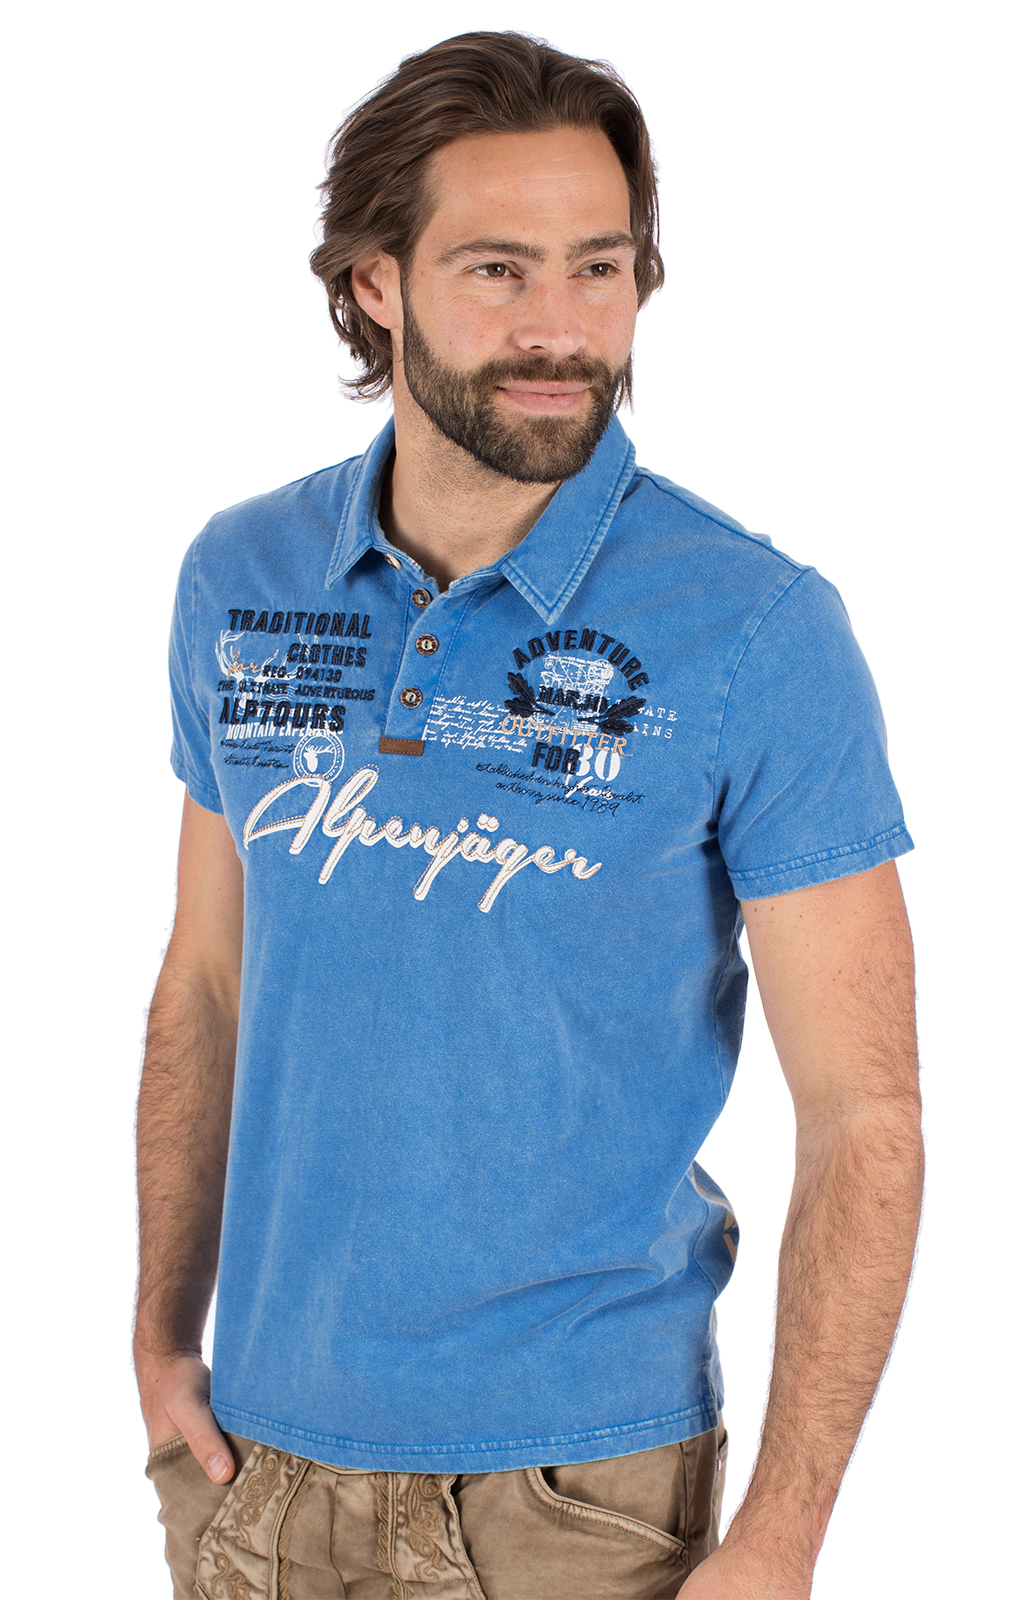 weitere Bilder von Trachten T-Shirt E09 - ALPENJAEGER blau